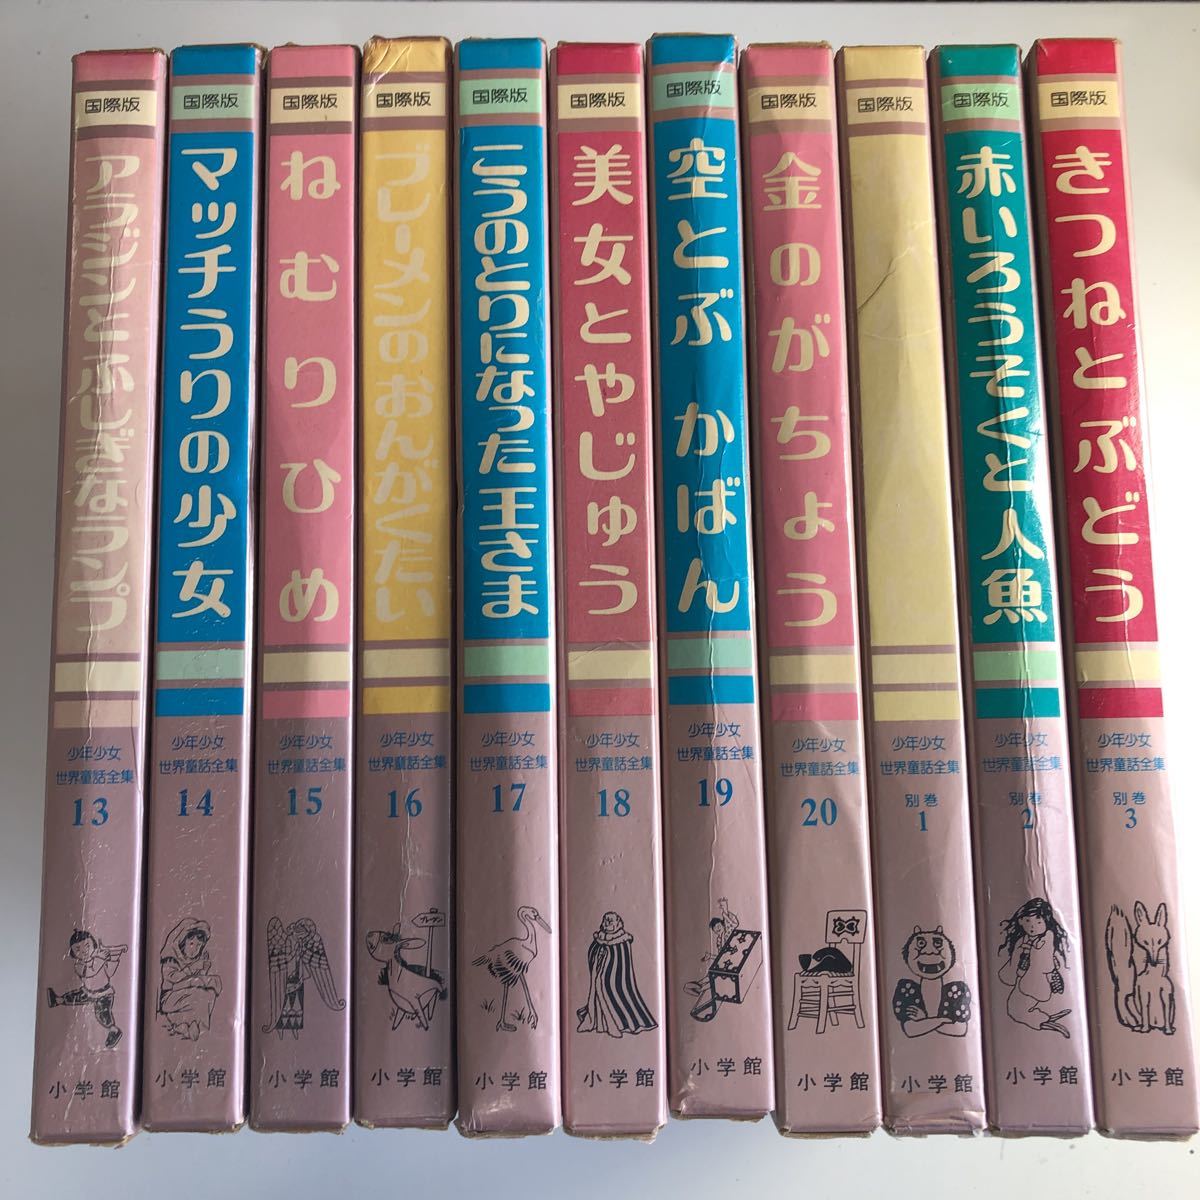 Y角7 国際版 少年少女 世界童話全集 全20巻 + 別巻3巻 合計 23冊 全巻